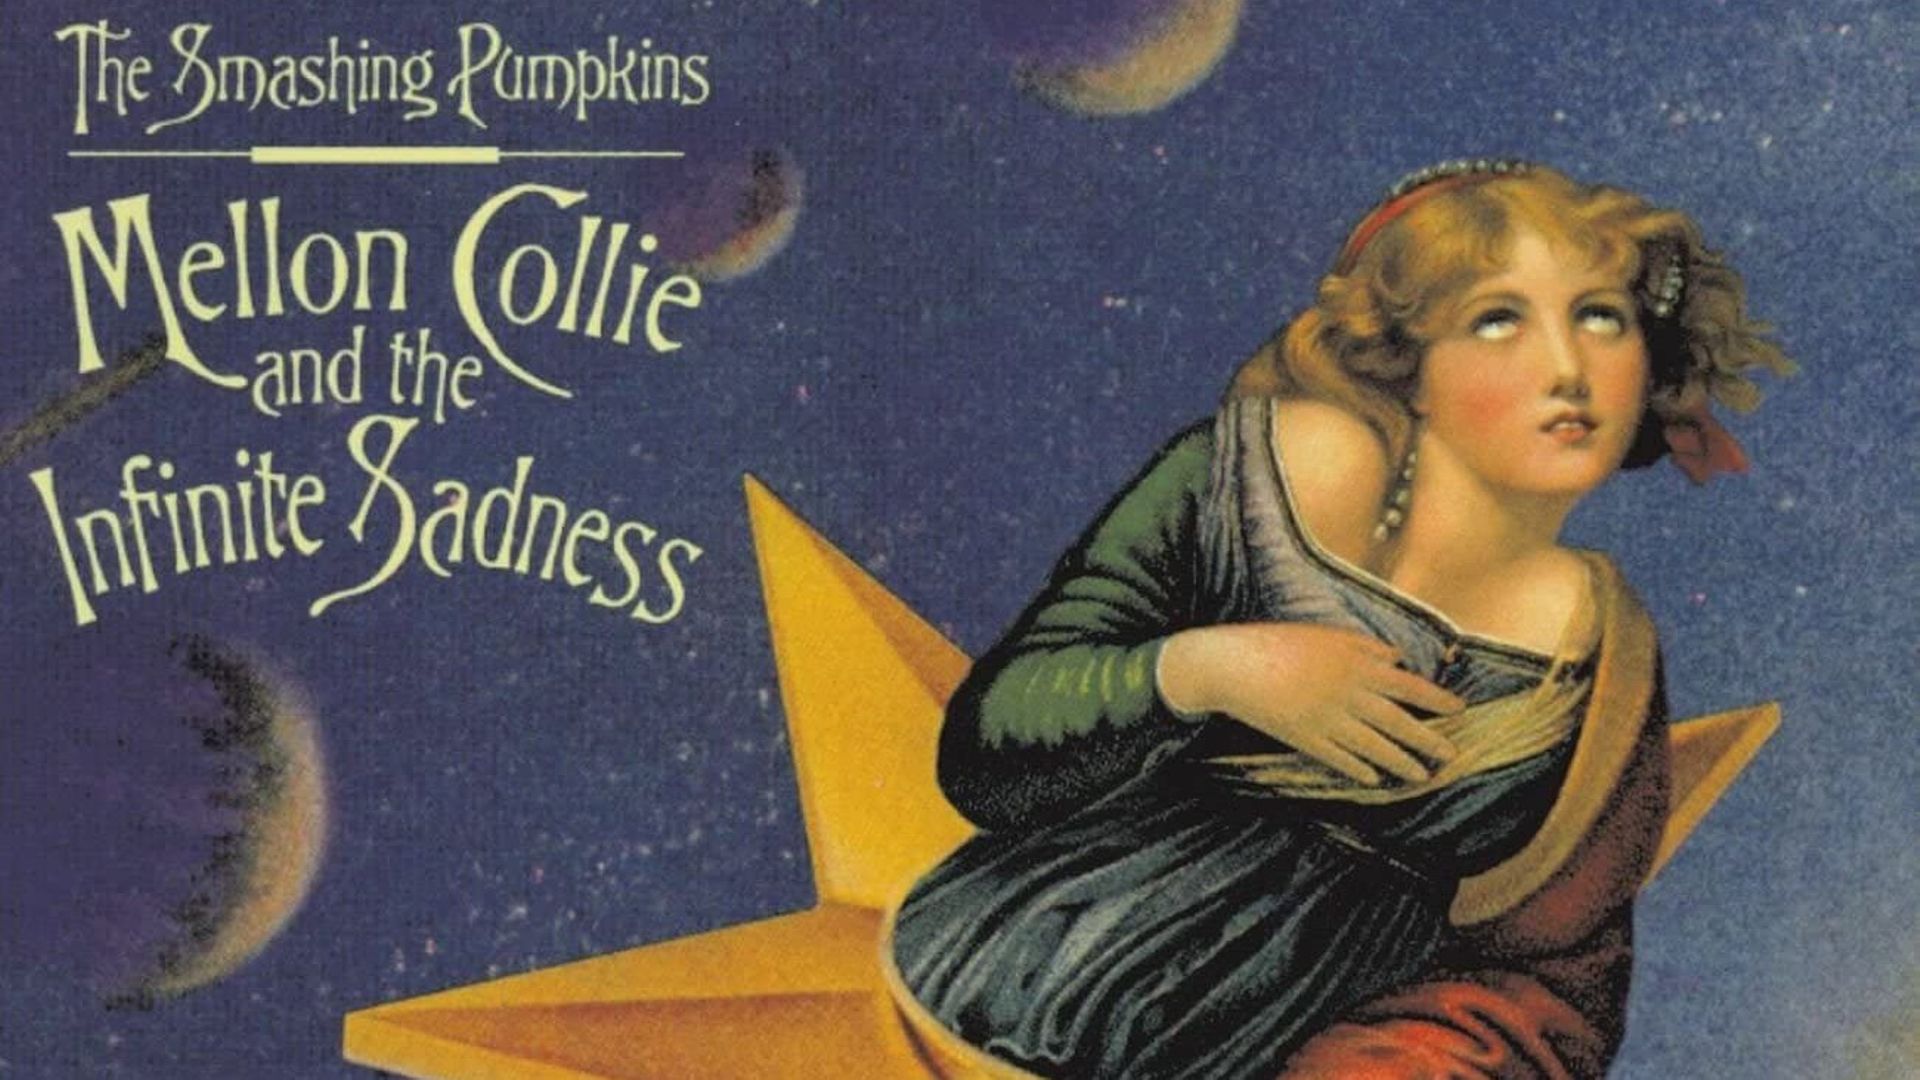 Les 25 ans de "Mellon Collie..." de Smashing Pumpkins